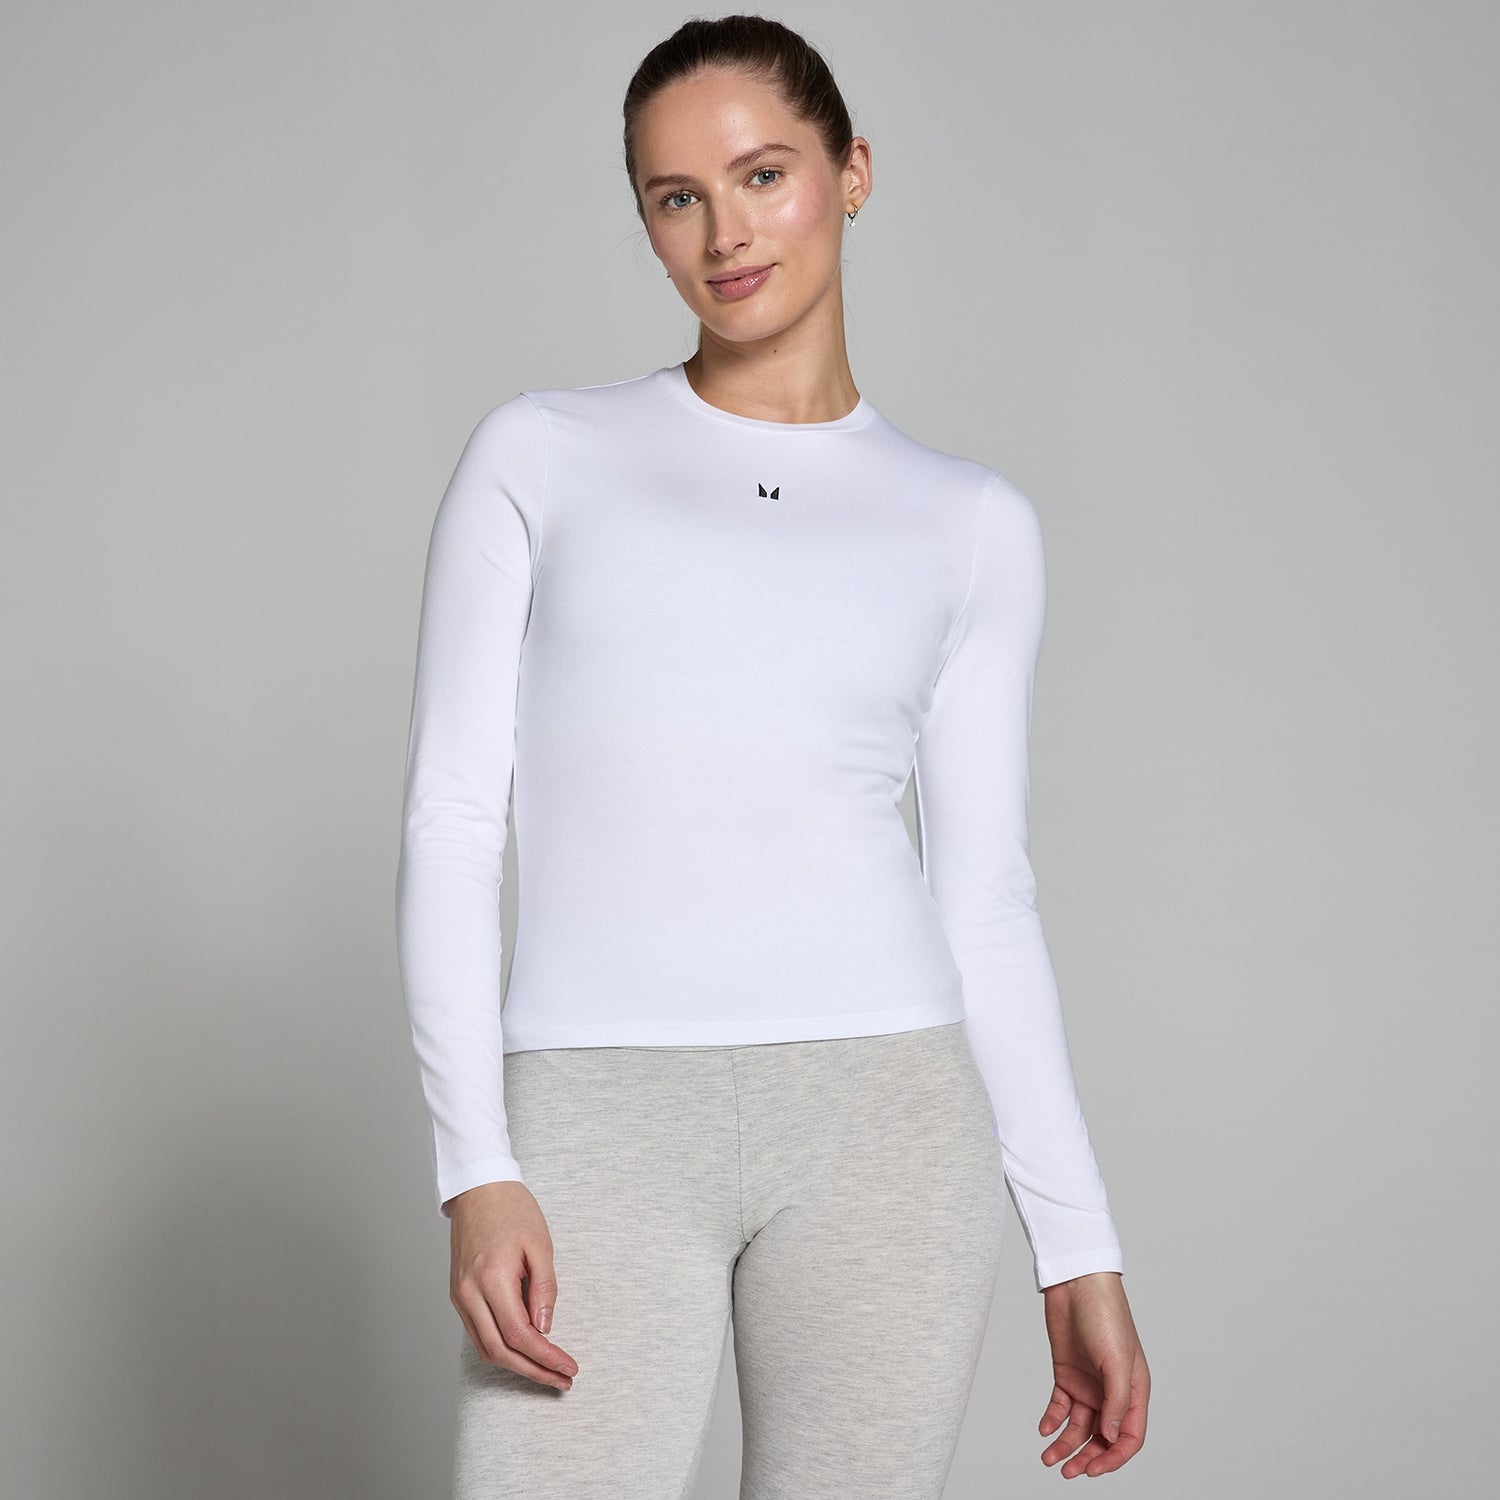 Женская облегающая футболка с длинными рукавами MP Basics — белый цвет - XXS